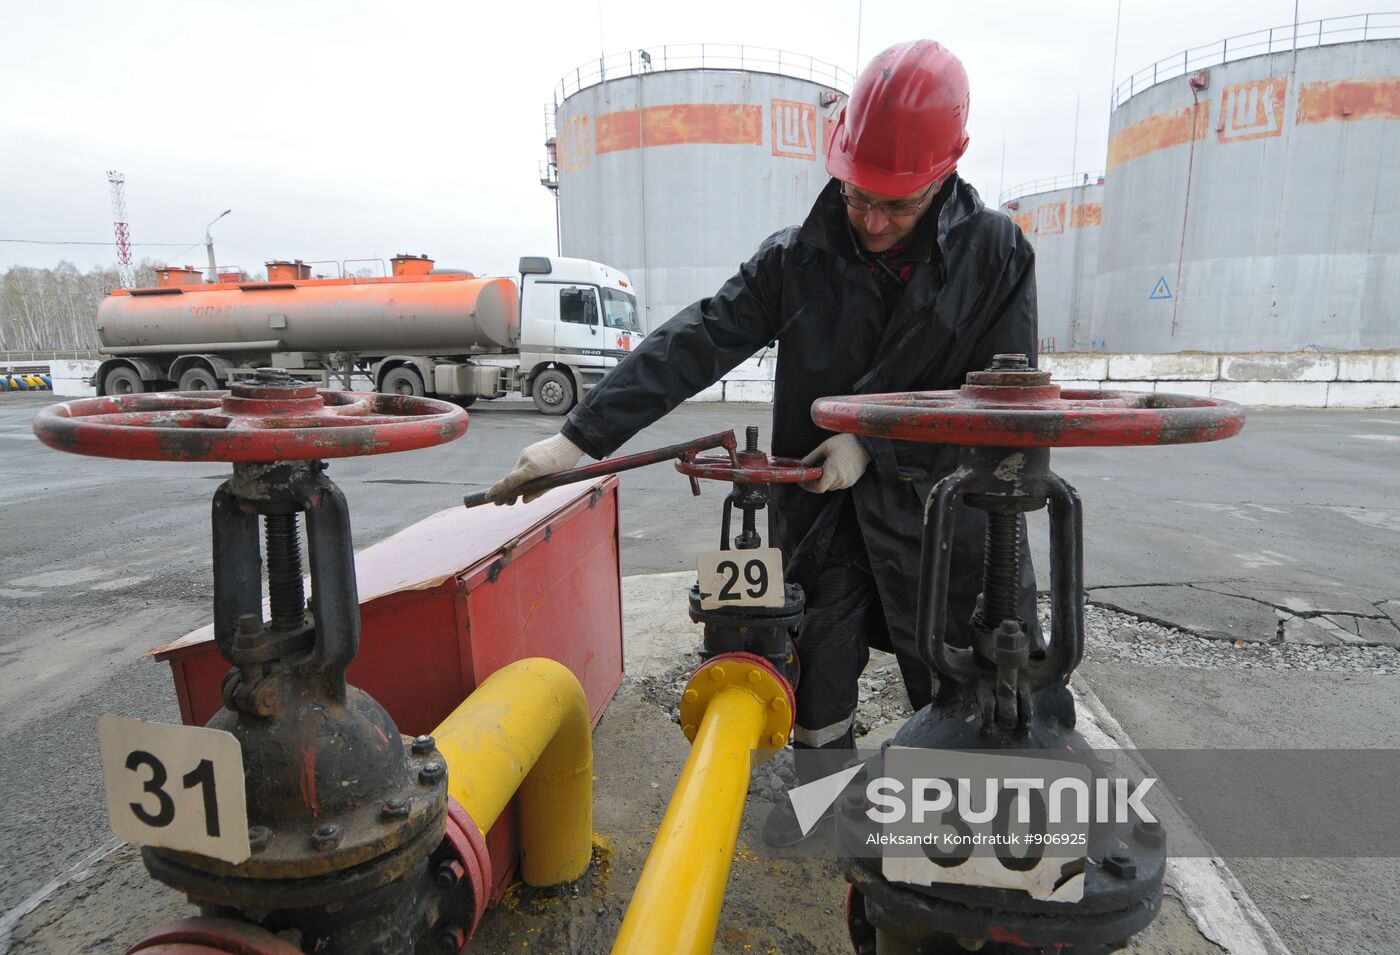 Chelyabinsk's Lukoil-Uralnefteproduct company